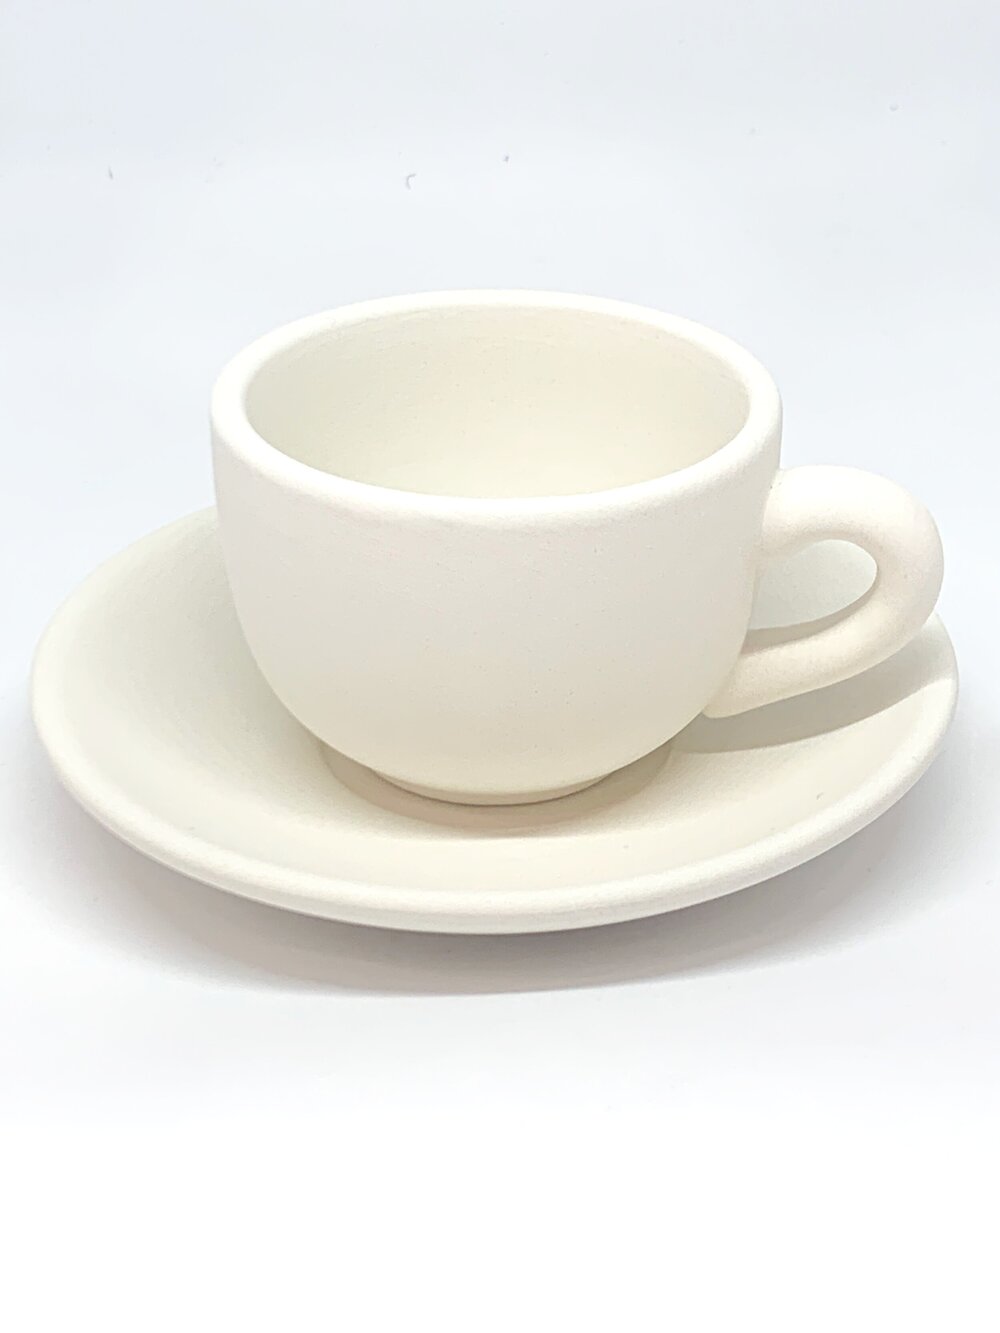 Custom Espresso Cup and Saucer